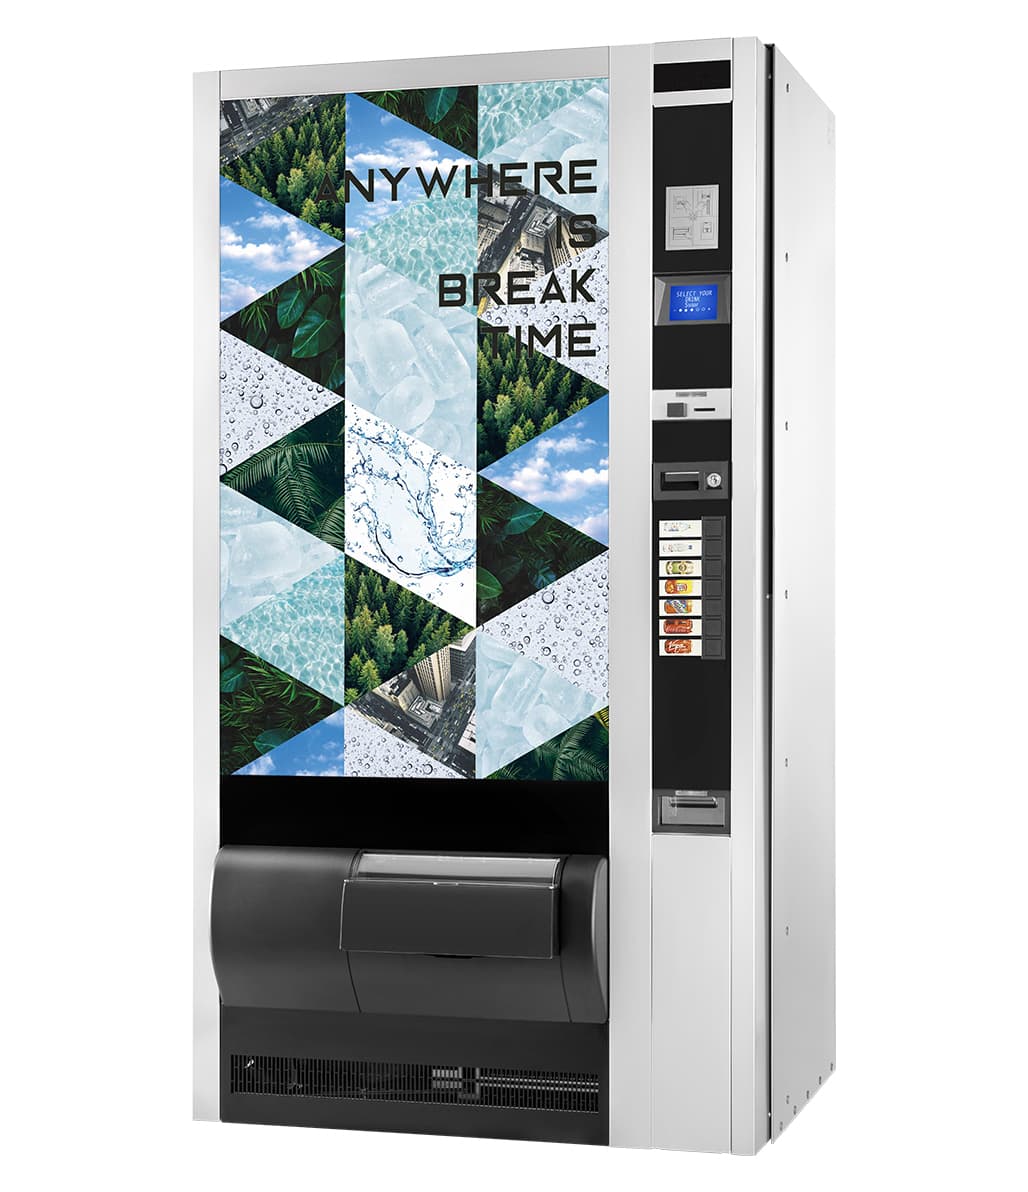 Distributeurs automatiques de boissons fraiches